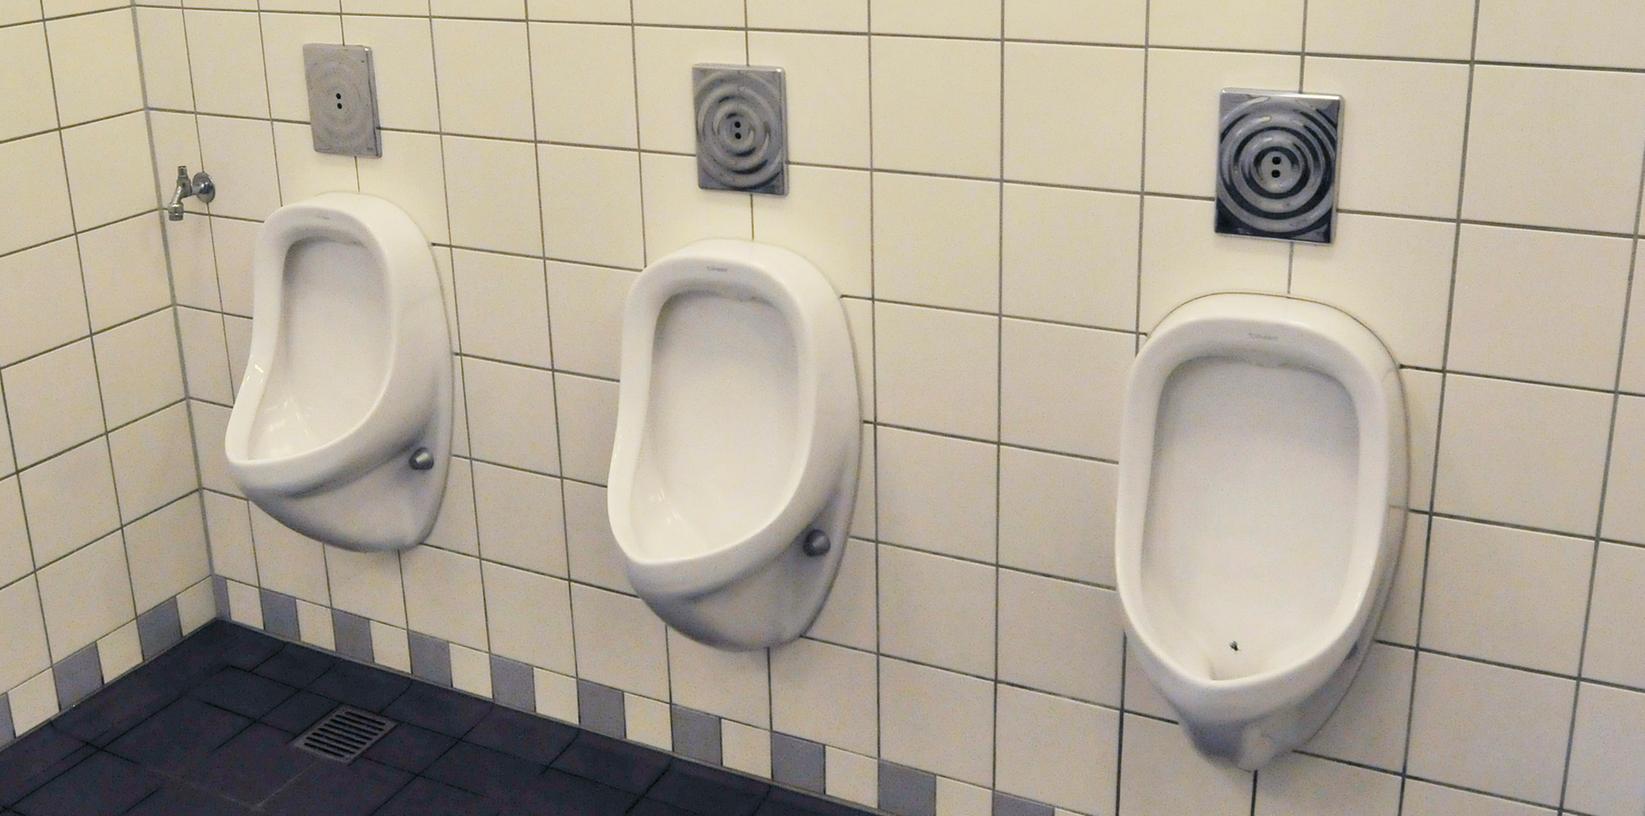 Immer häufiger werden öffentliche Toiletten auch zum Übernachten genutzt. Dem will die Stadt nun Einhalt gebieten.